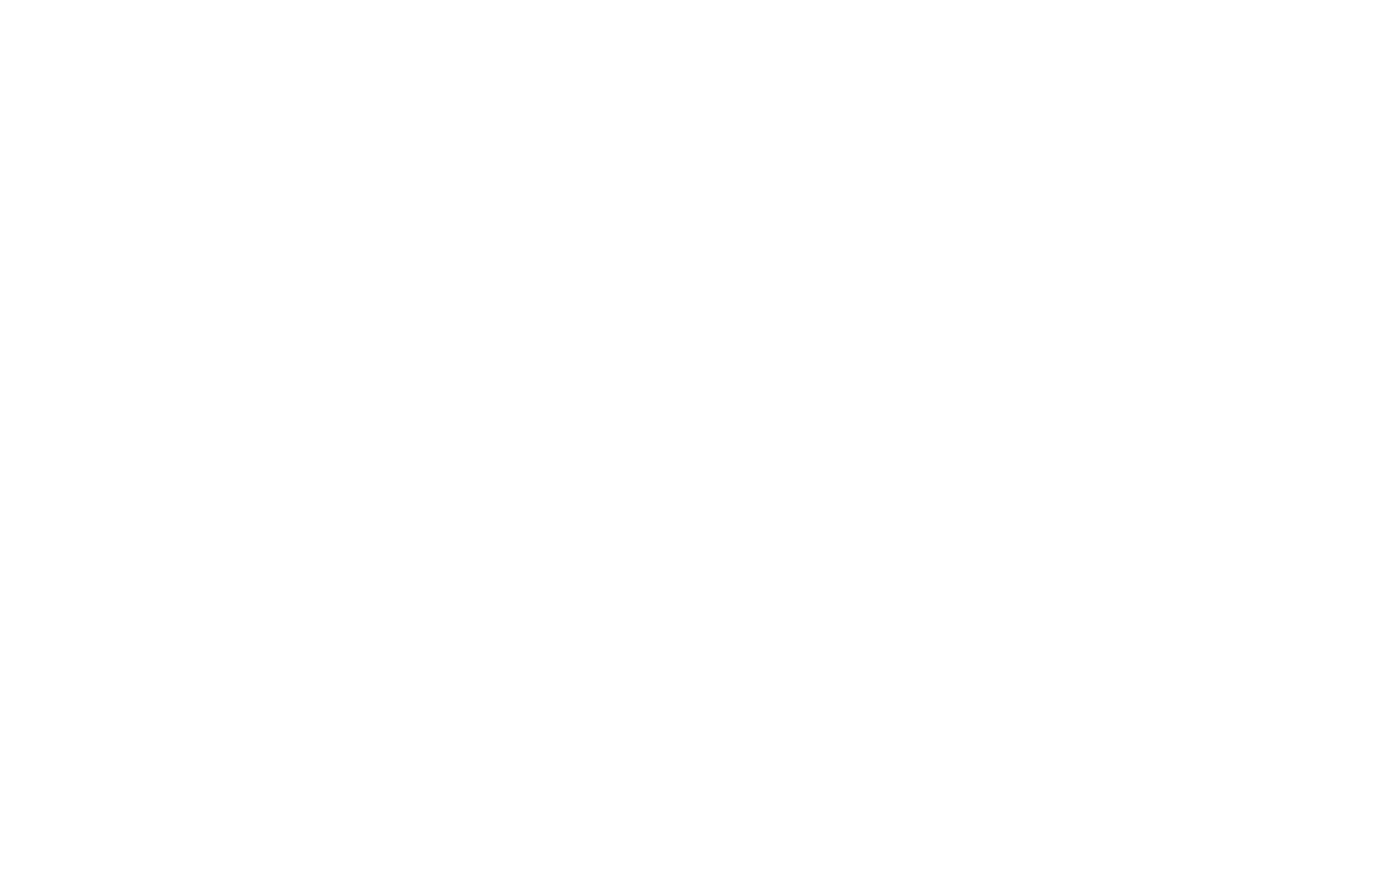 Кейс сервиса BRANDNATION - Логотип и фирменный стиль школы рисования. Брендинговое агентство BRANDNATION в Москве и Санкт-Петербурге. Услуги: разработка логотипа и фирменного стиля, дизайн упаковки, брендбук, ребрендинг, разработка сайта.